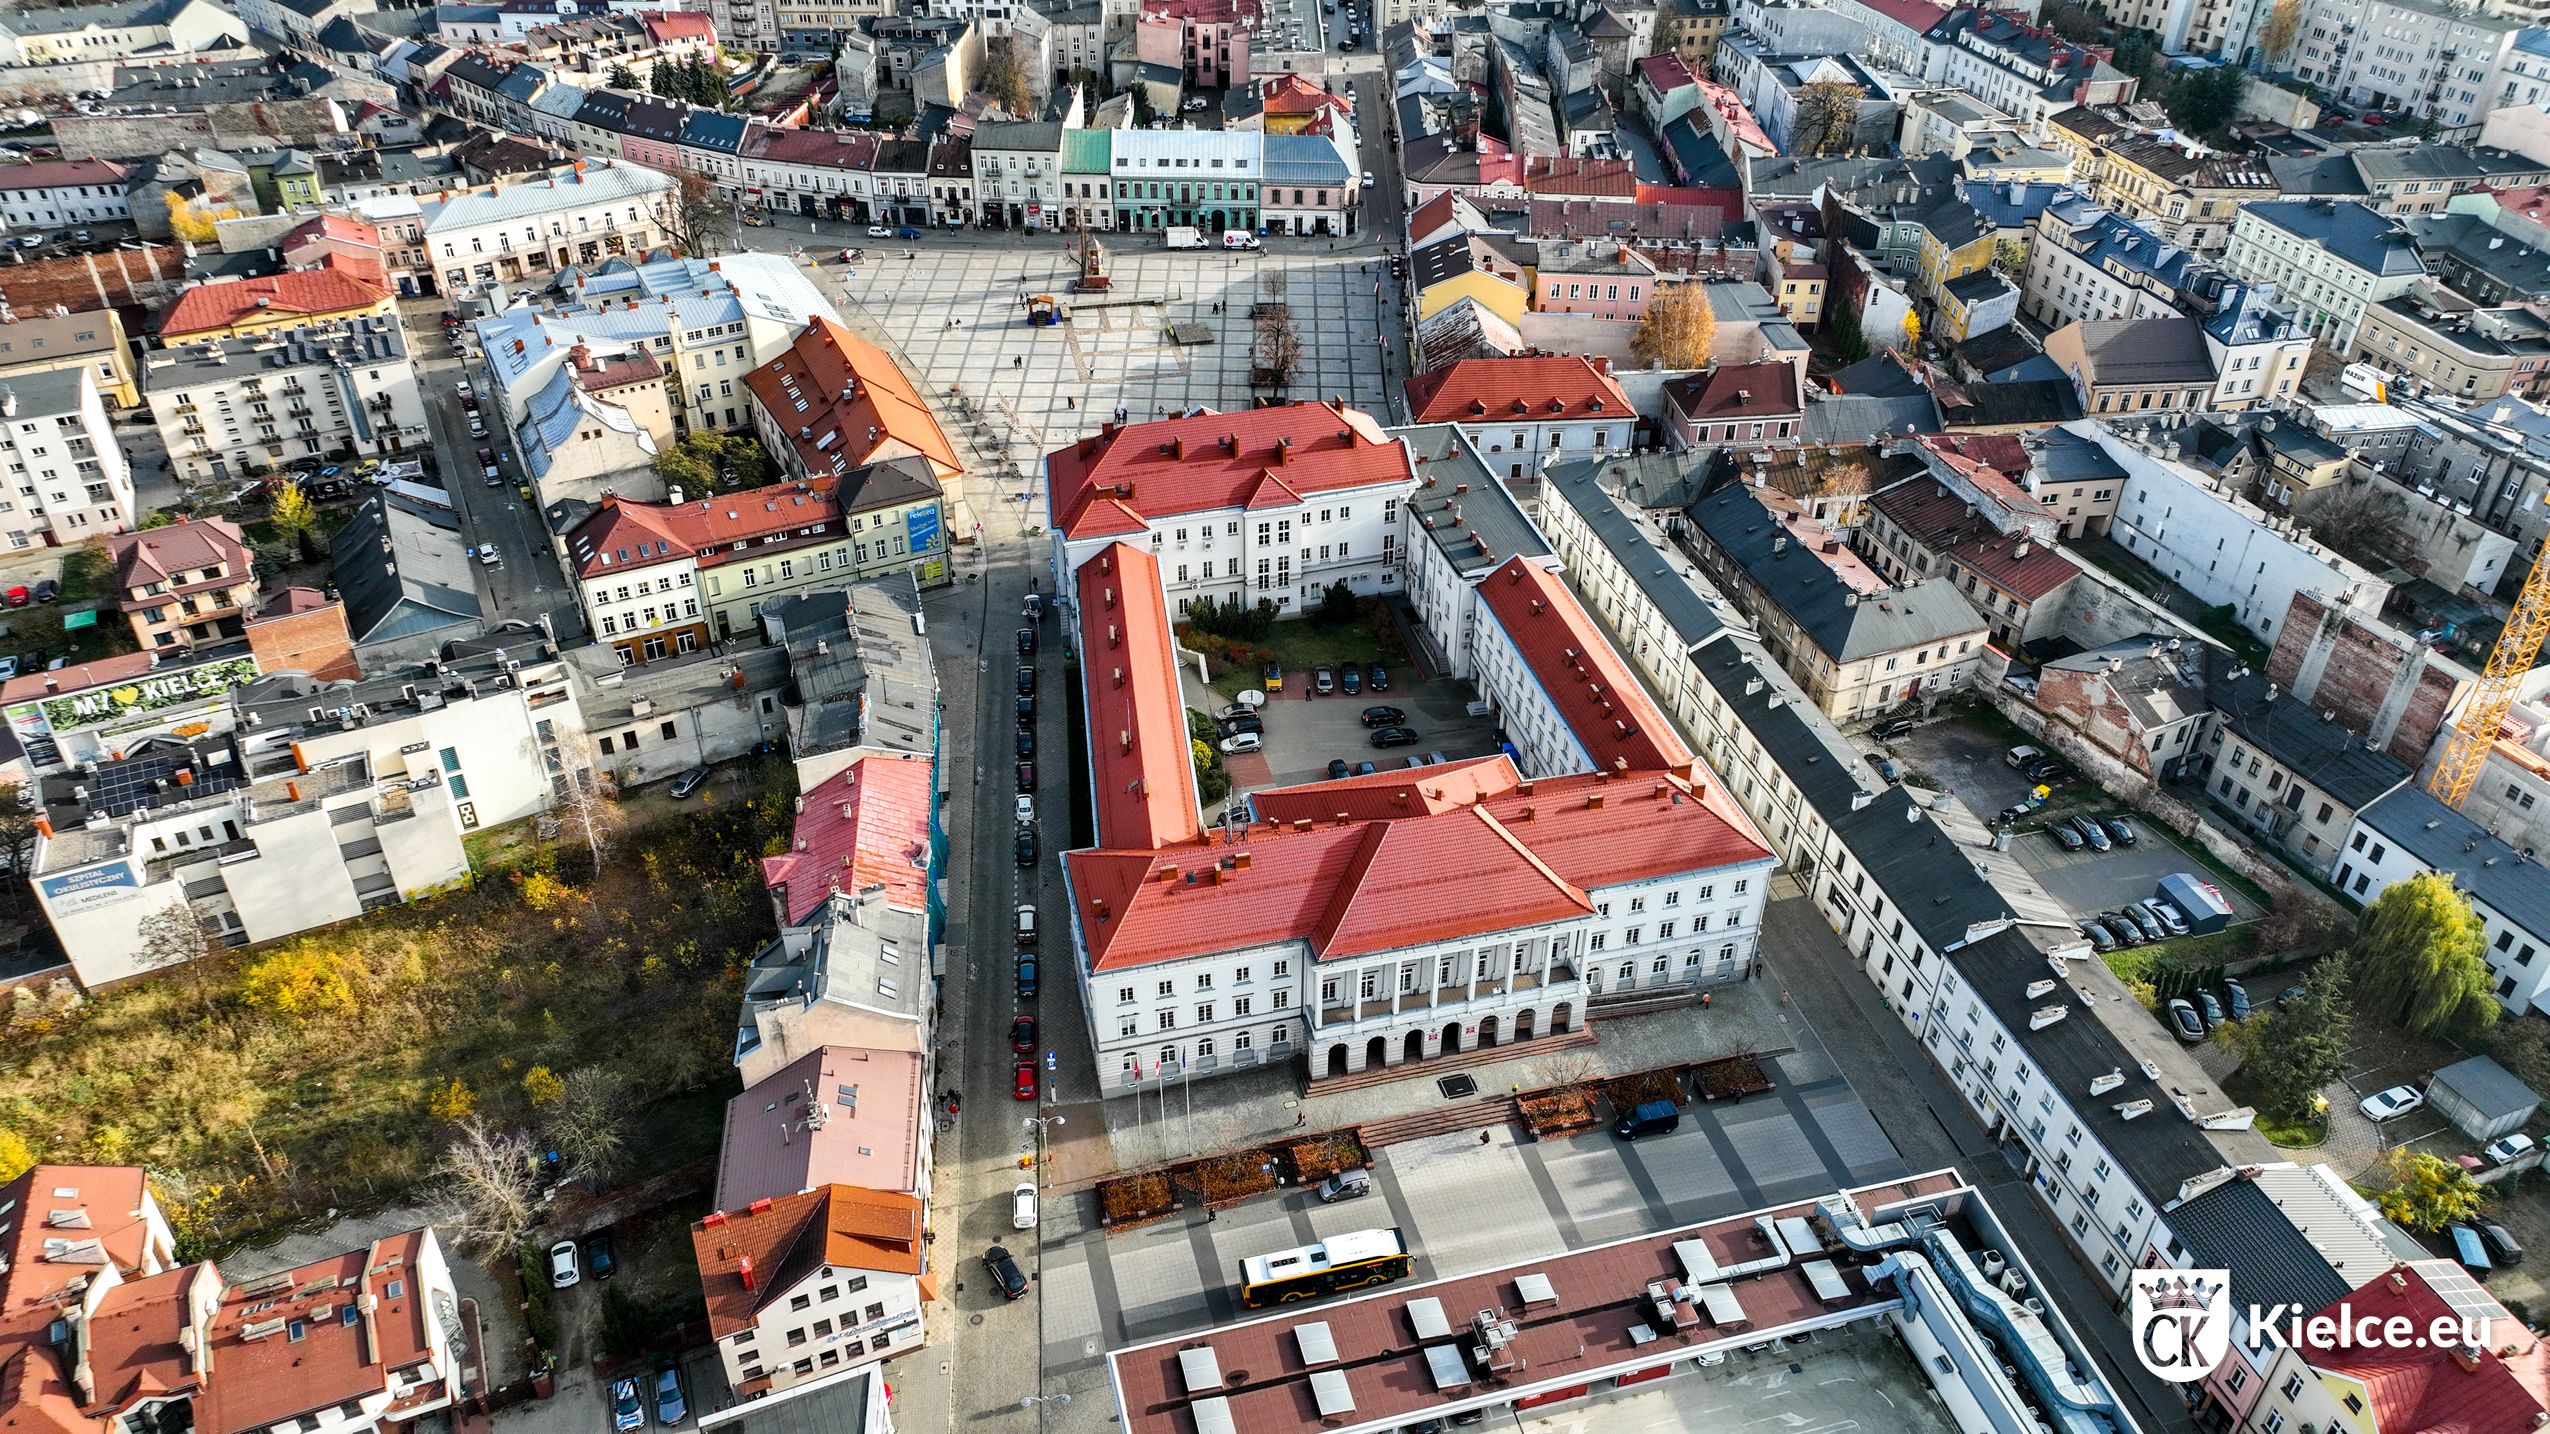 Rynek w Kielcach widok z lotu ptaka